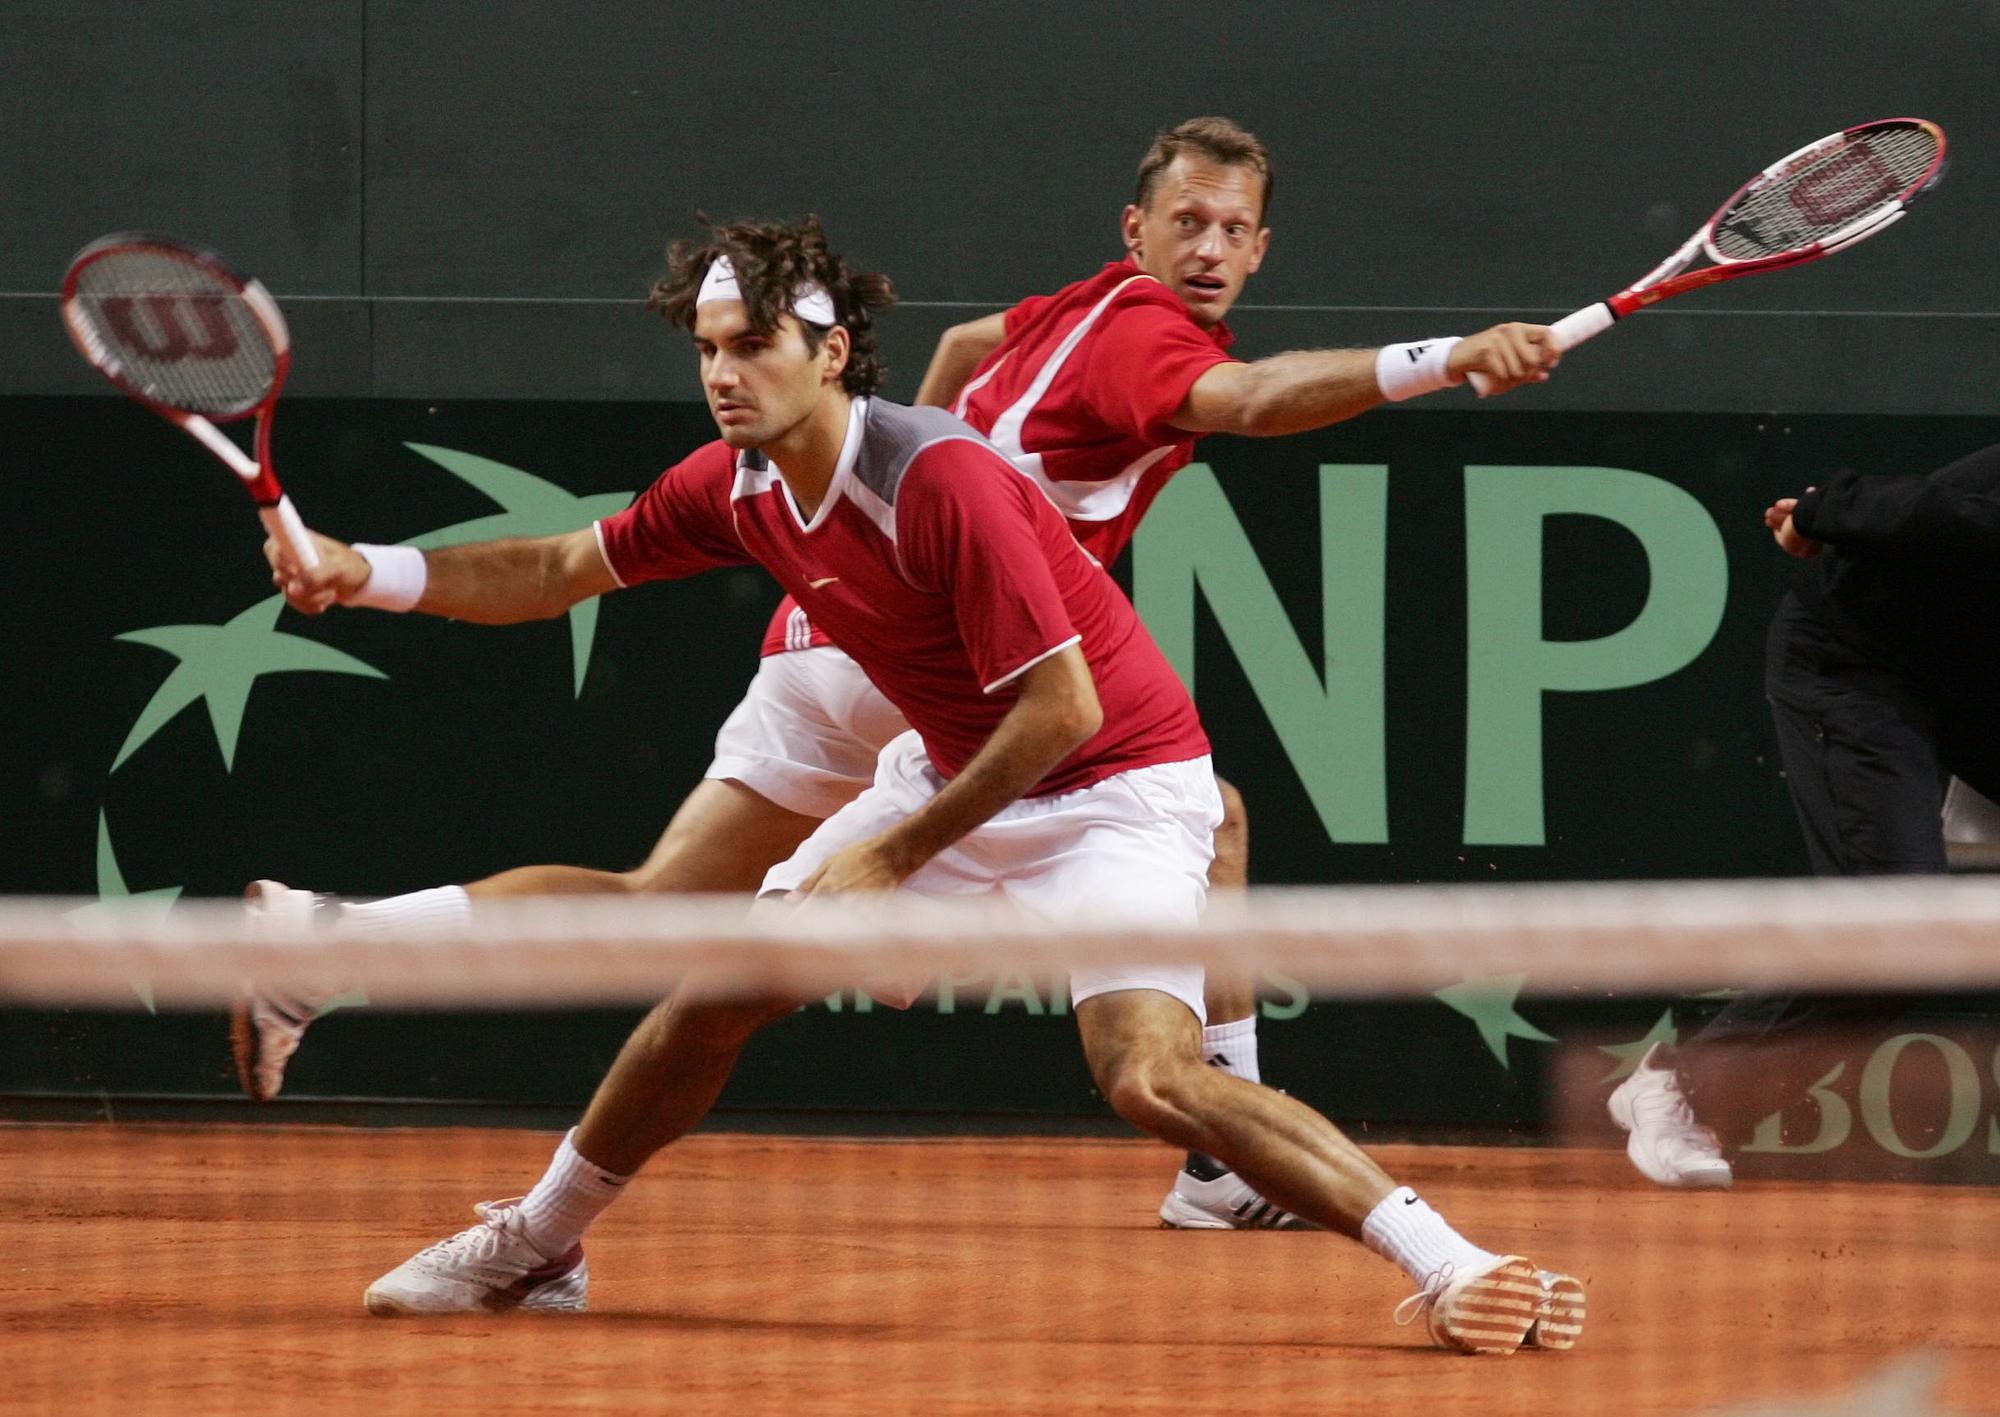 24 septembre 2005: la paire Federer - Allegro lors du duel de Coupe Davis contre la Grande-Bretagne. [Urs Bucher - Urs Bucher]